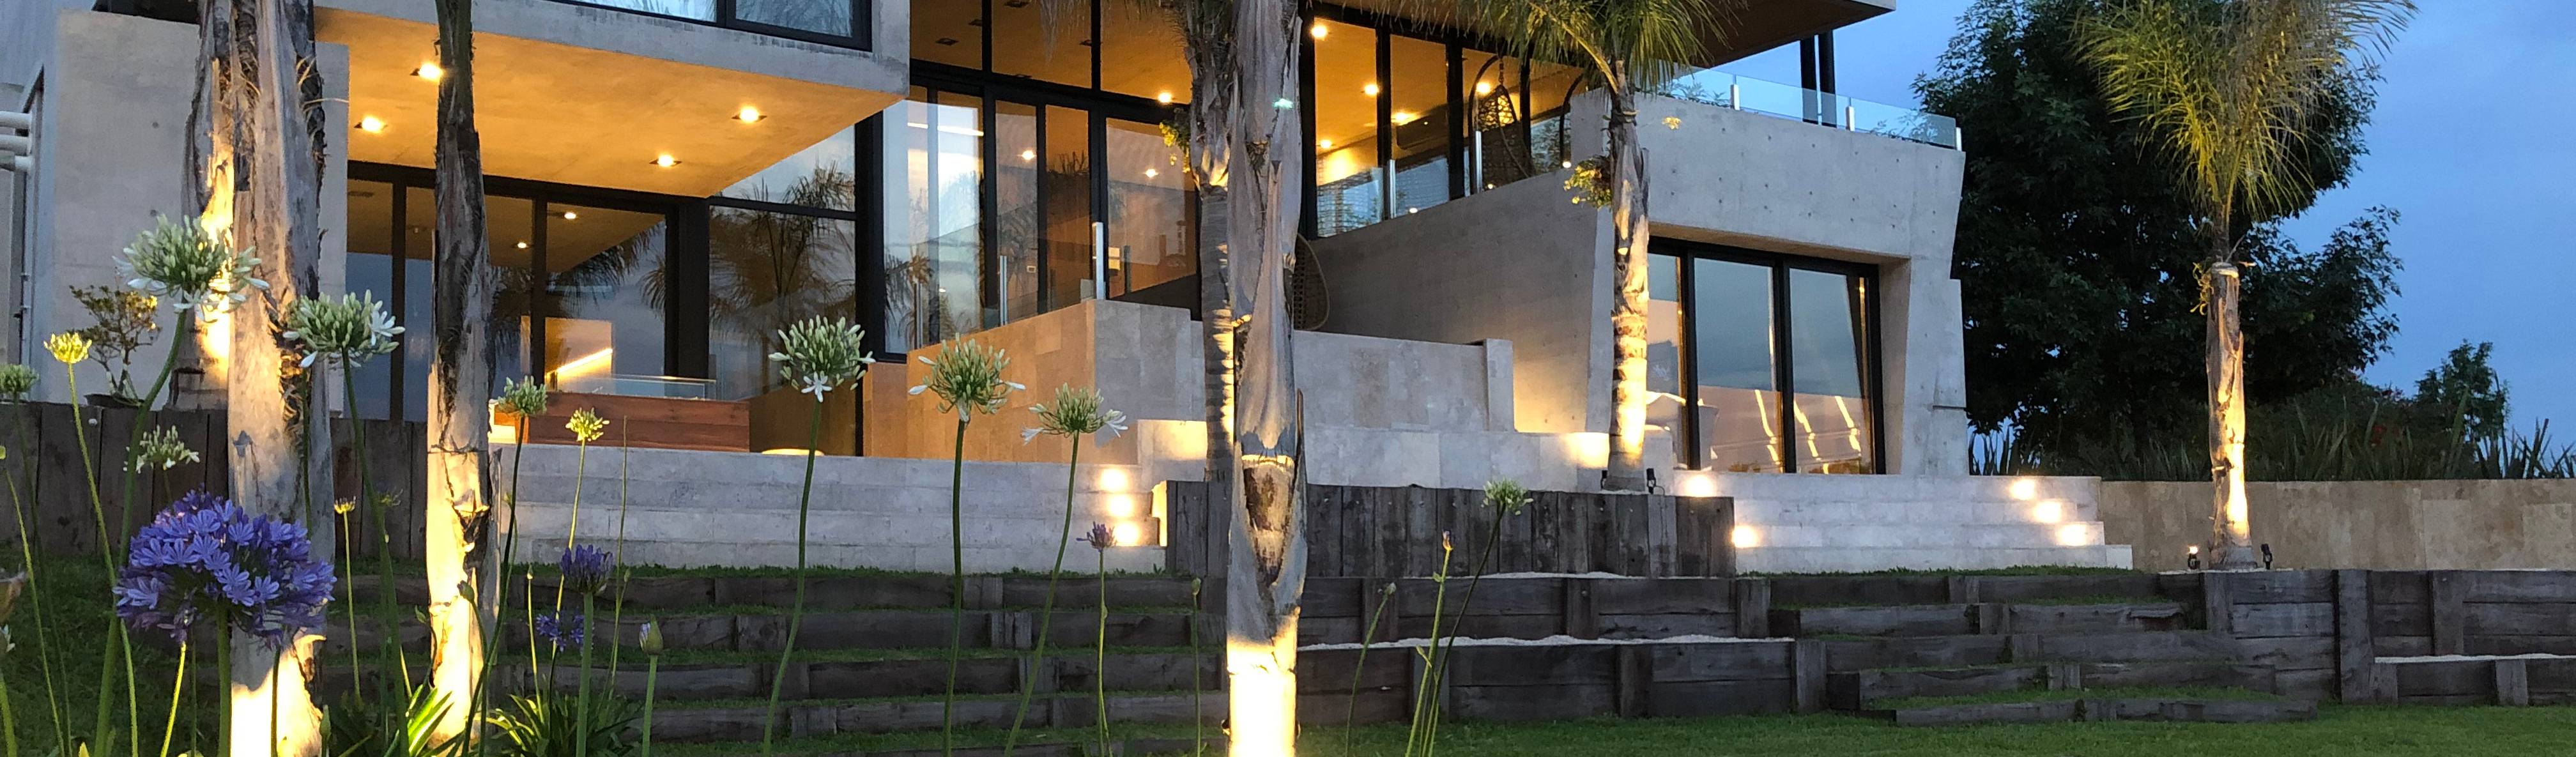 Maximiliano Lago Arquitectura – Estudio Azteca